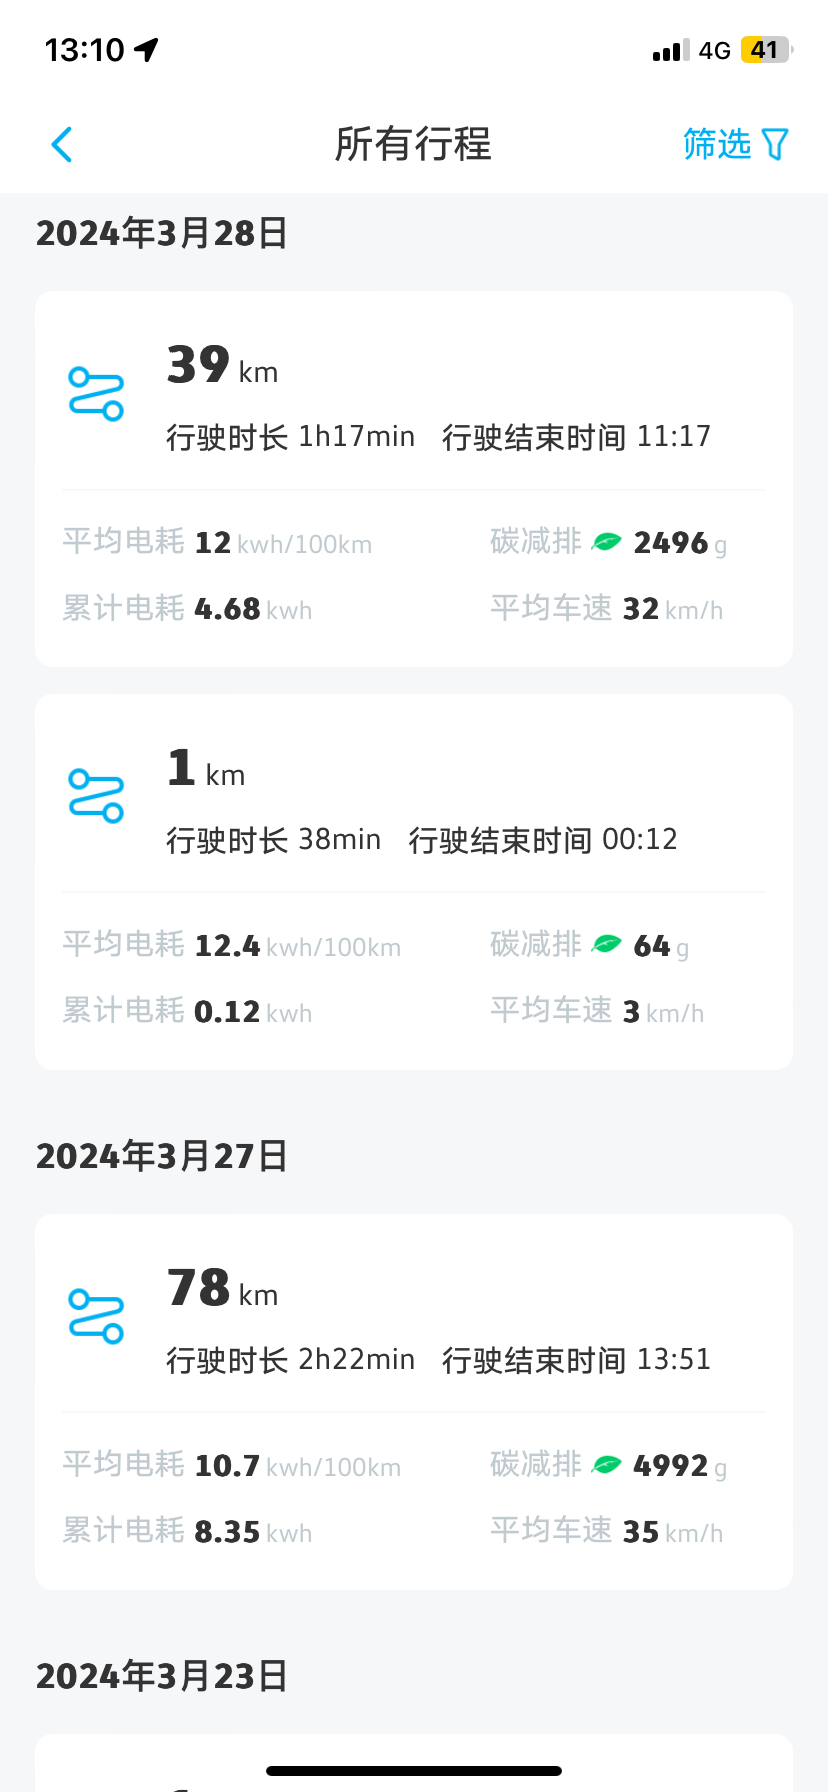 -城市：上海
-温度：5-11度
-车型型号：ID3
-能耗表现：12kWh
-其他备注：高架+地面39公里 平均时速32 经济模式 空调lo度 